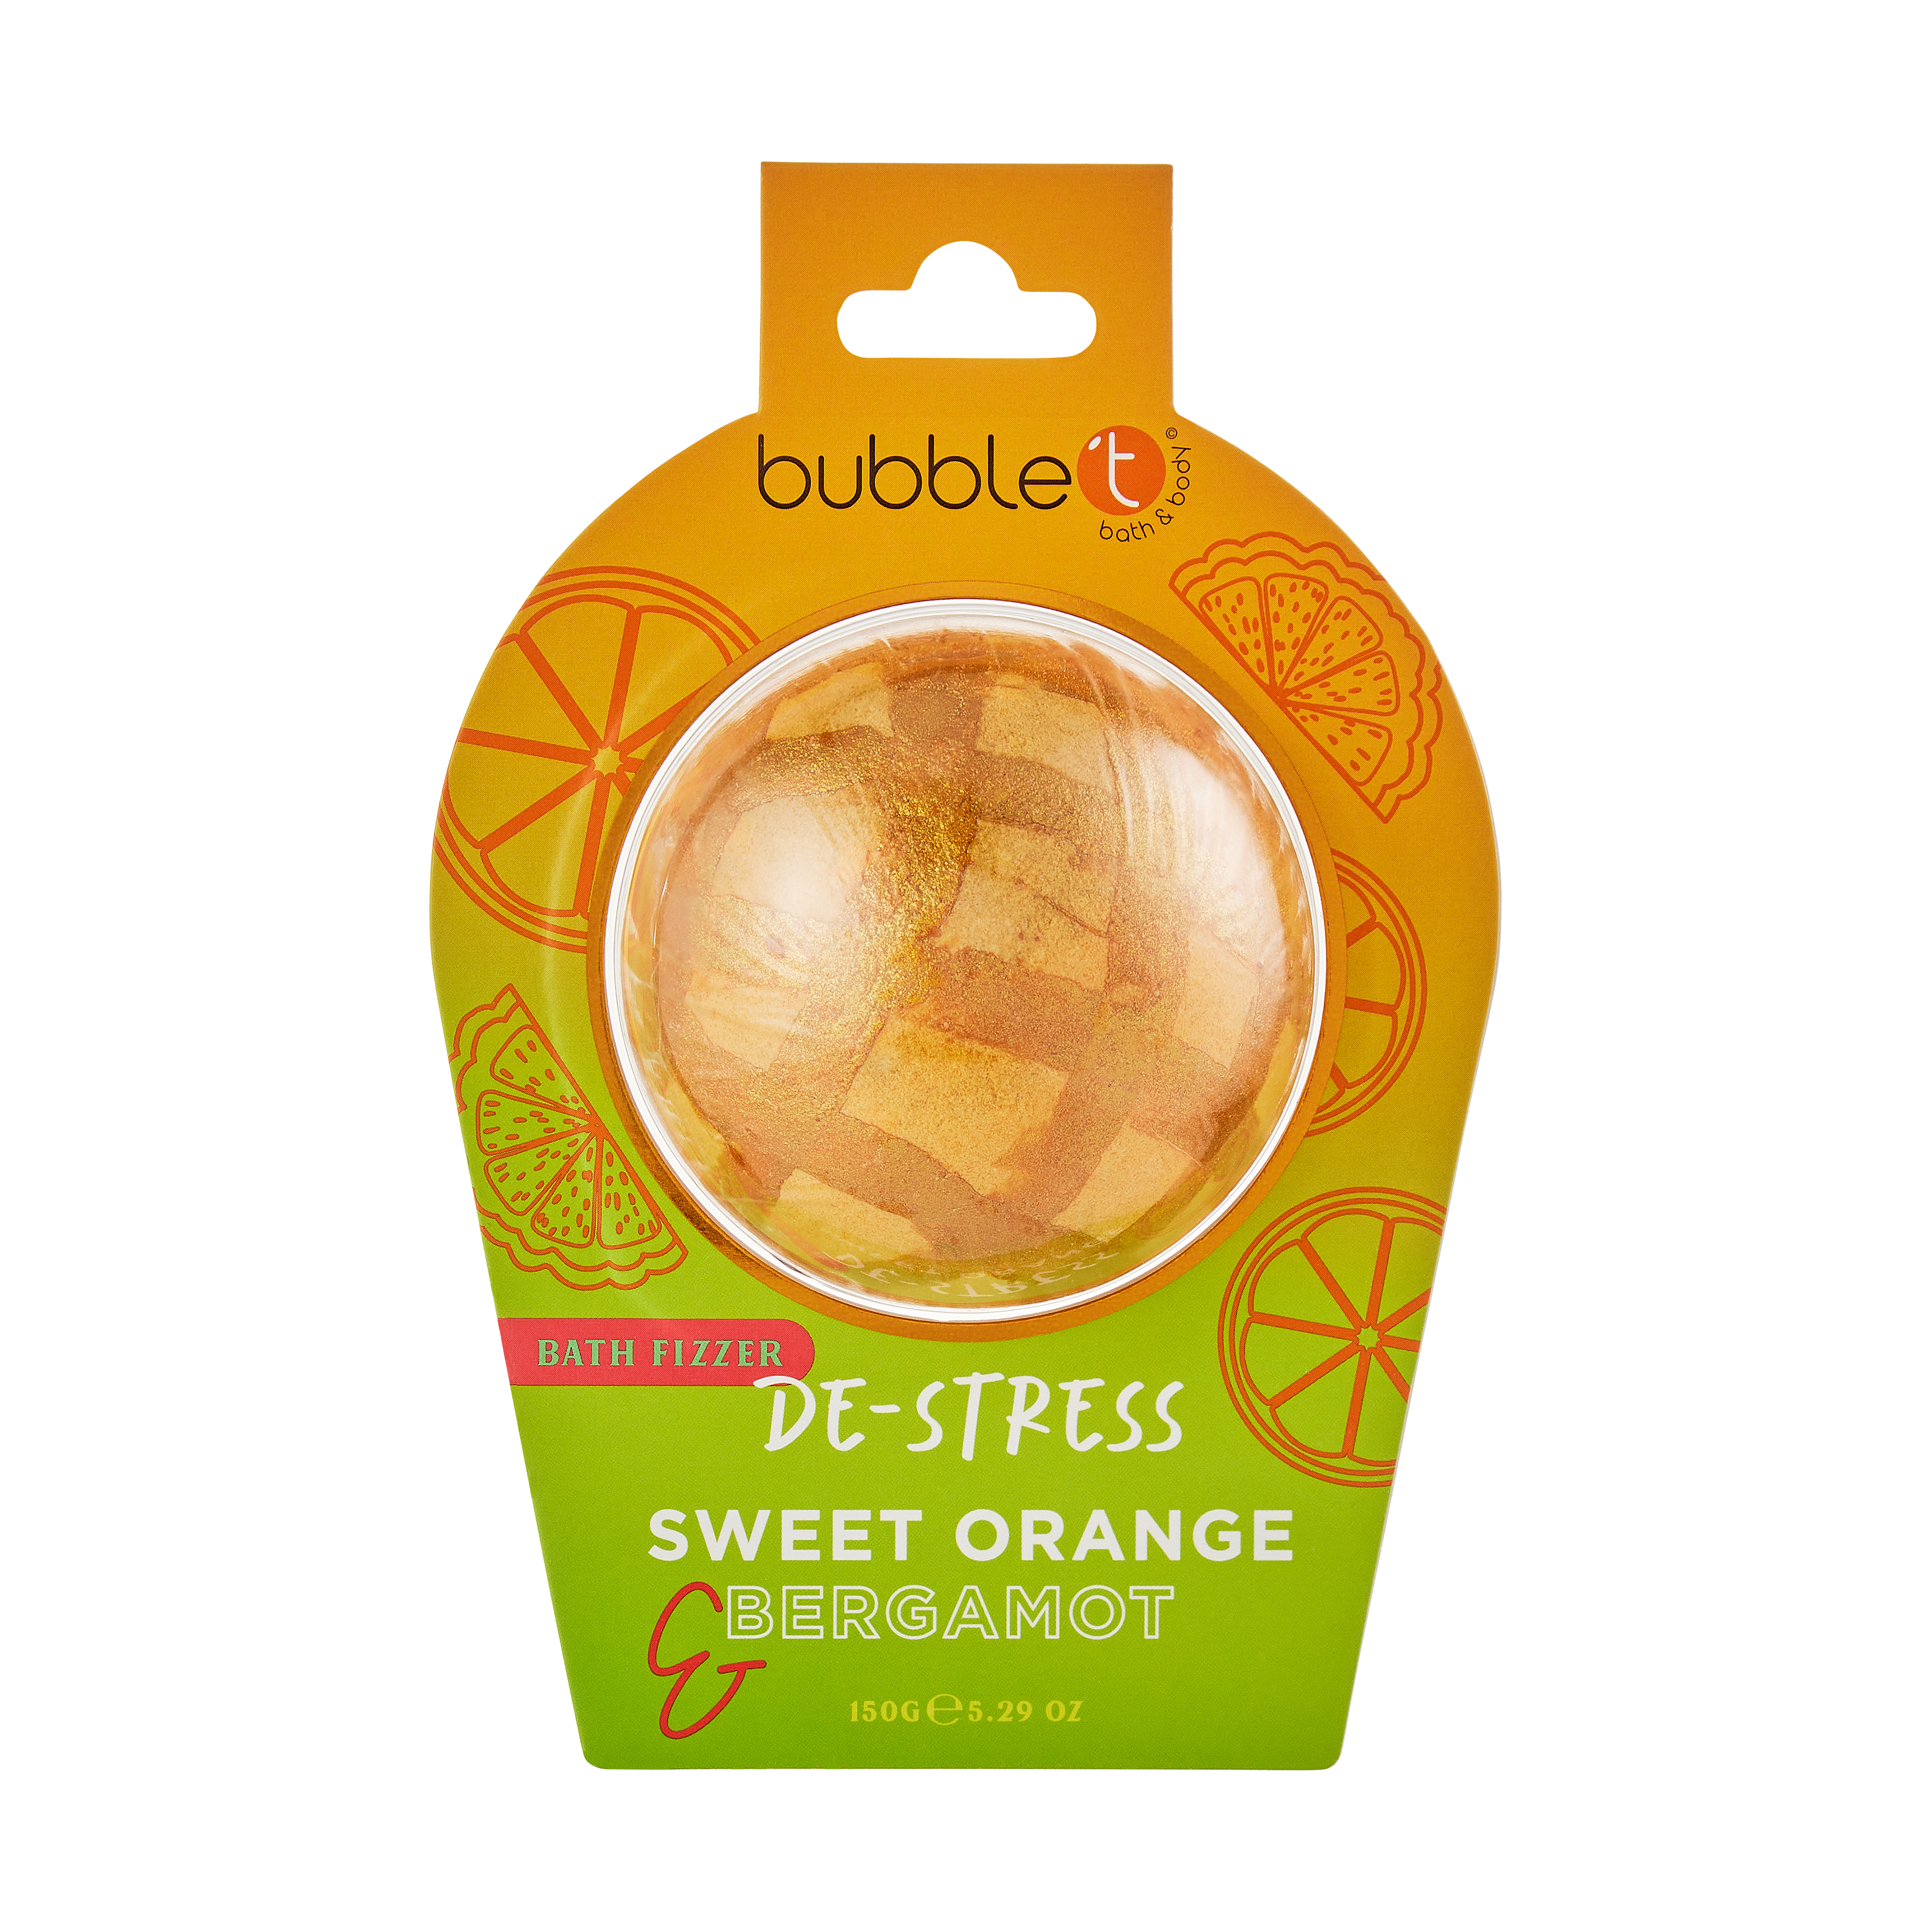 BUBBLE T Bath Fizzer De-stress Sweet Orange & Bergamot 150g